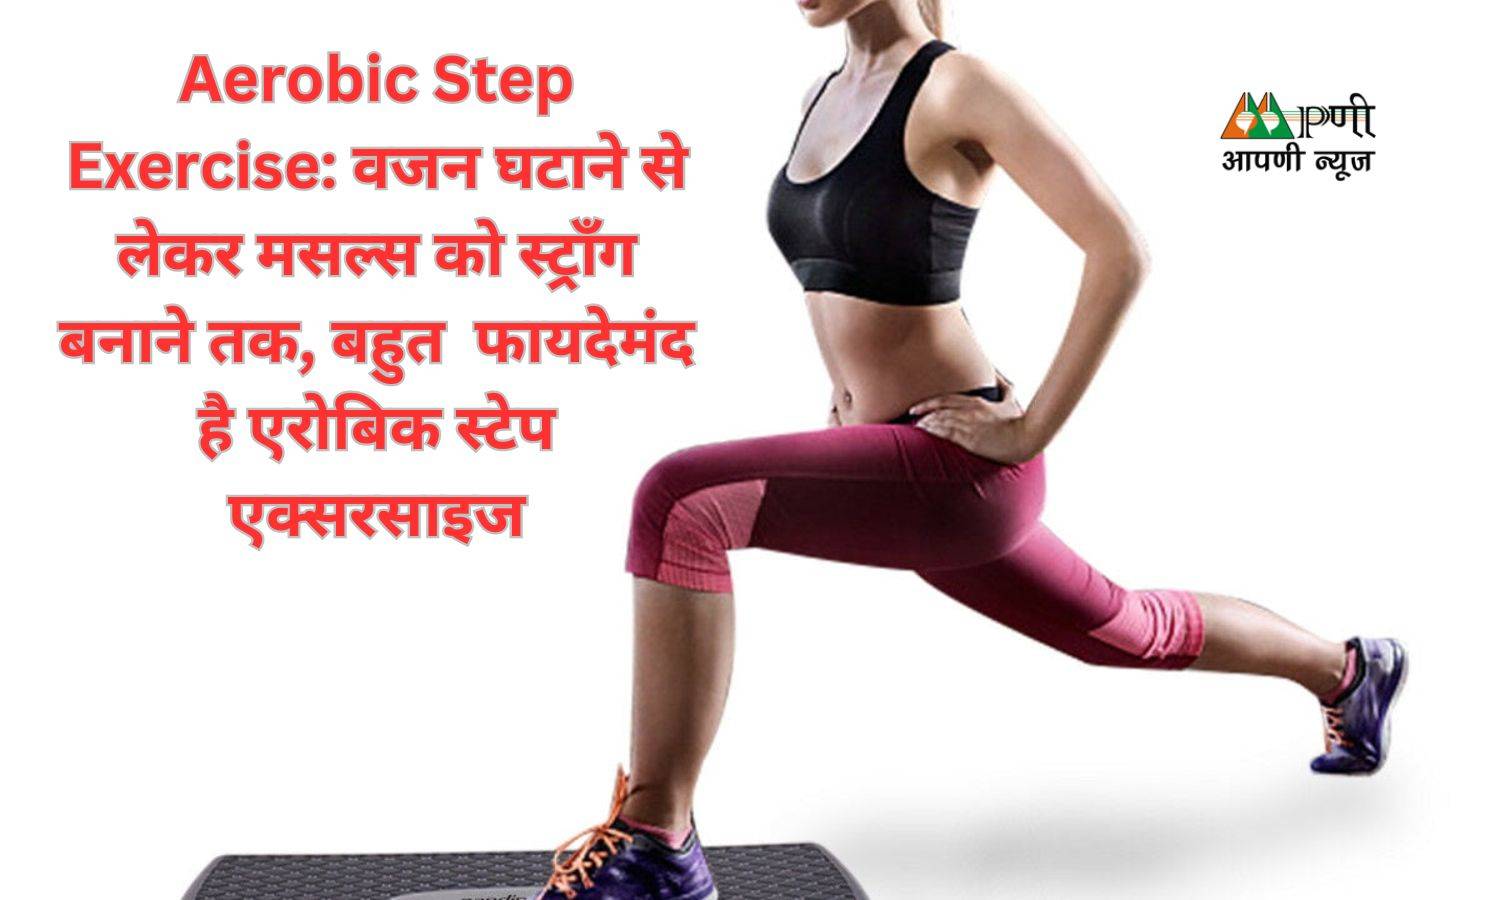 Aerobic Step Exercise: वजन घटाने से लेकर मसल्स को स्ट्रॉंग बनाने तक, बहुत  फायदेमंद है एरोबिक स्टेप एक्सरसाइज